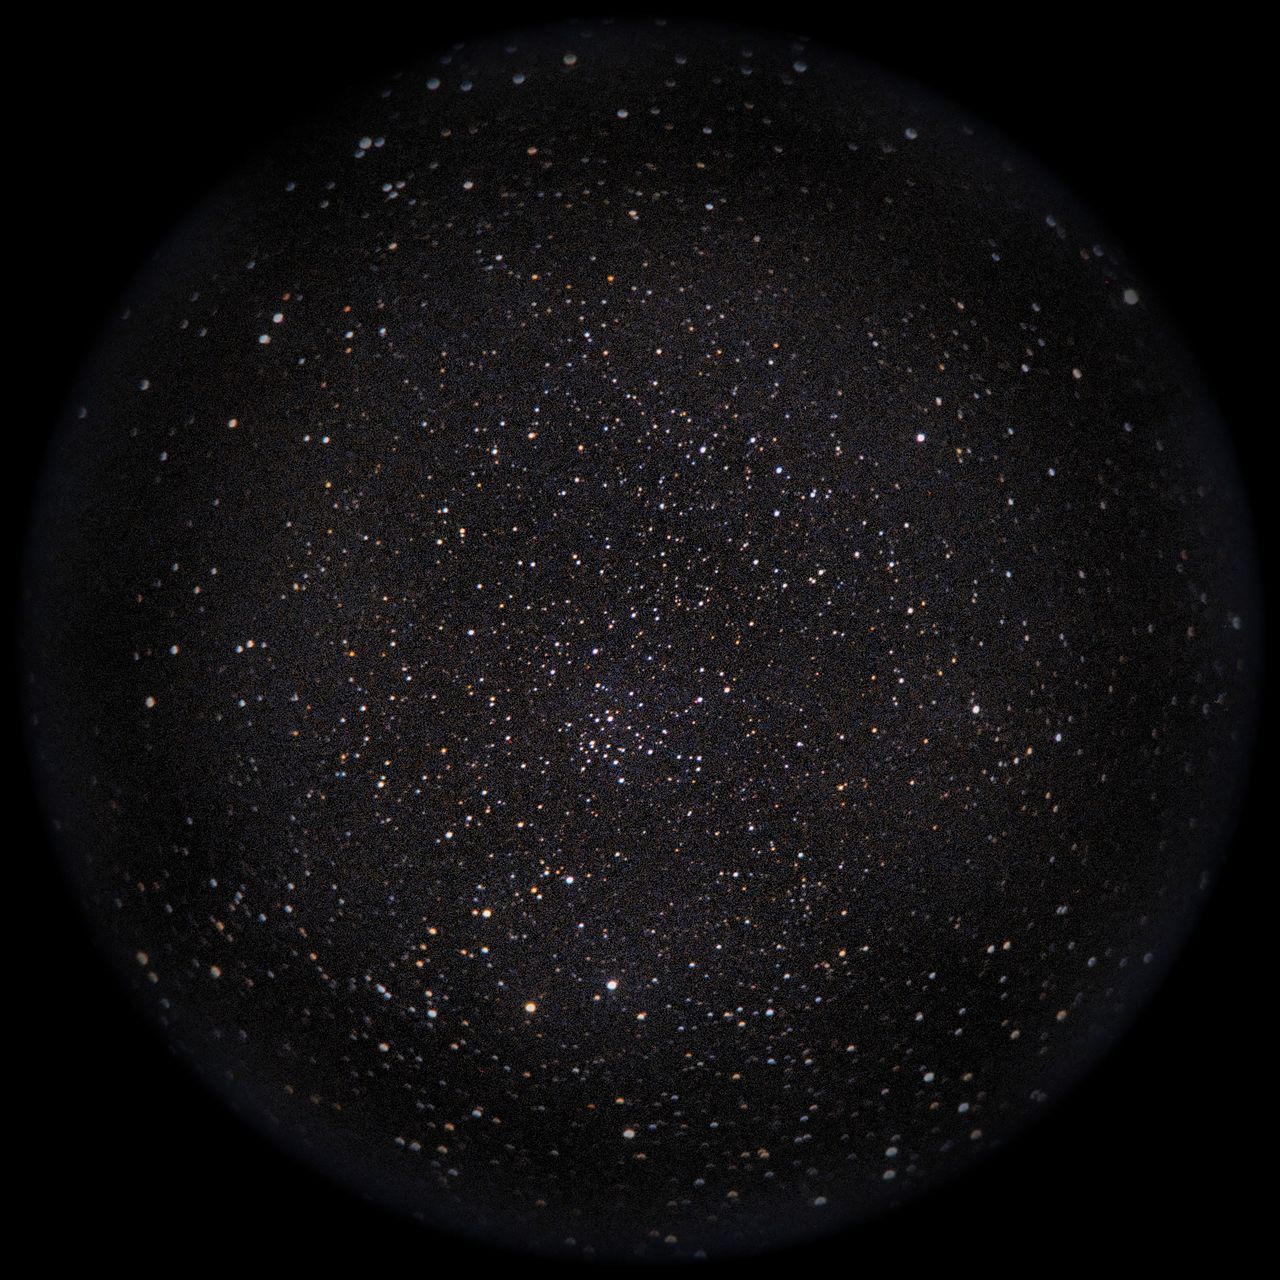 Image of NGC189